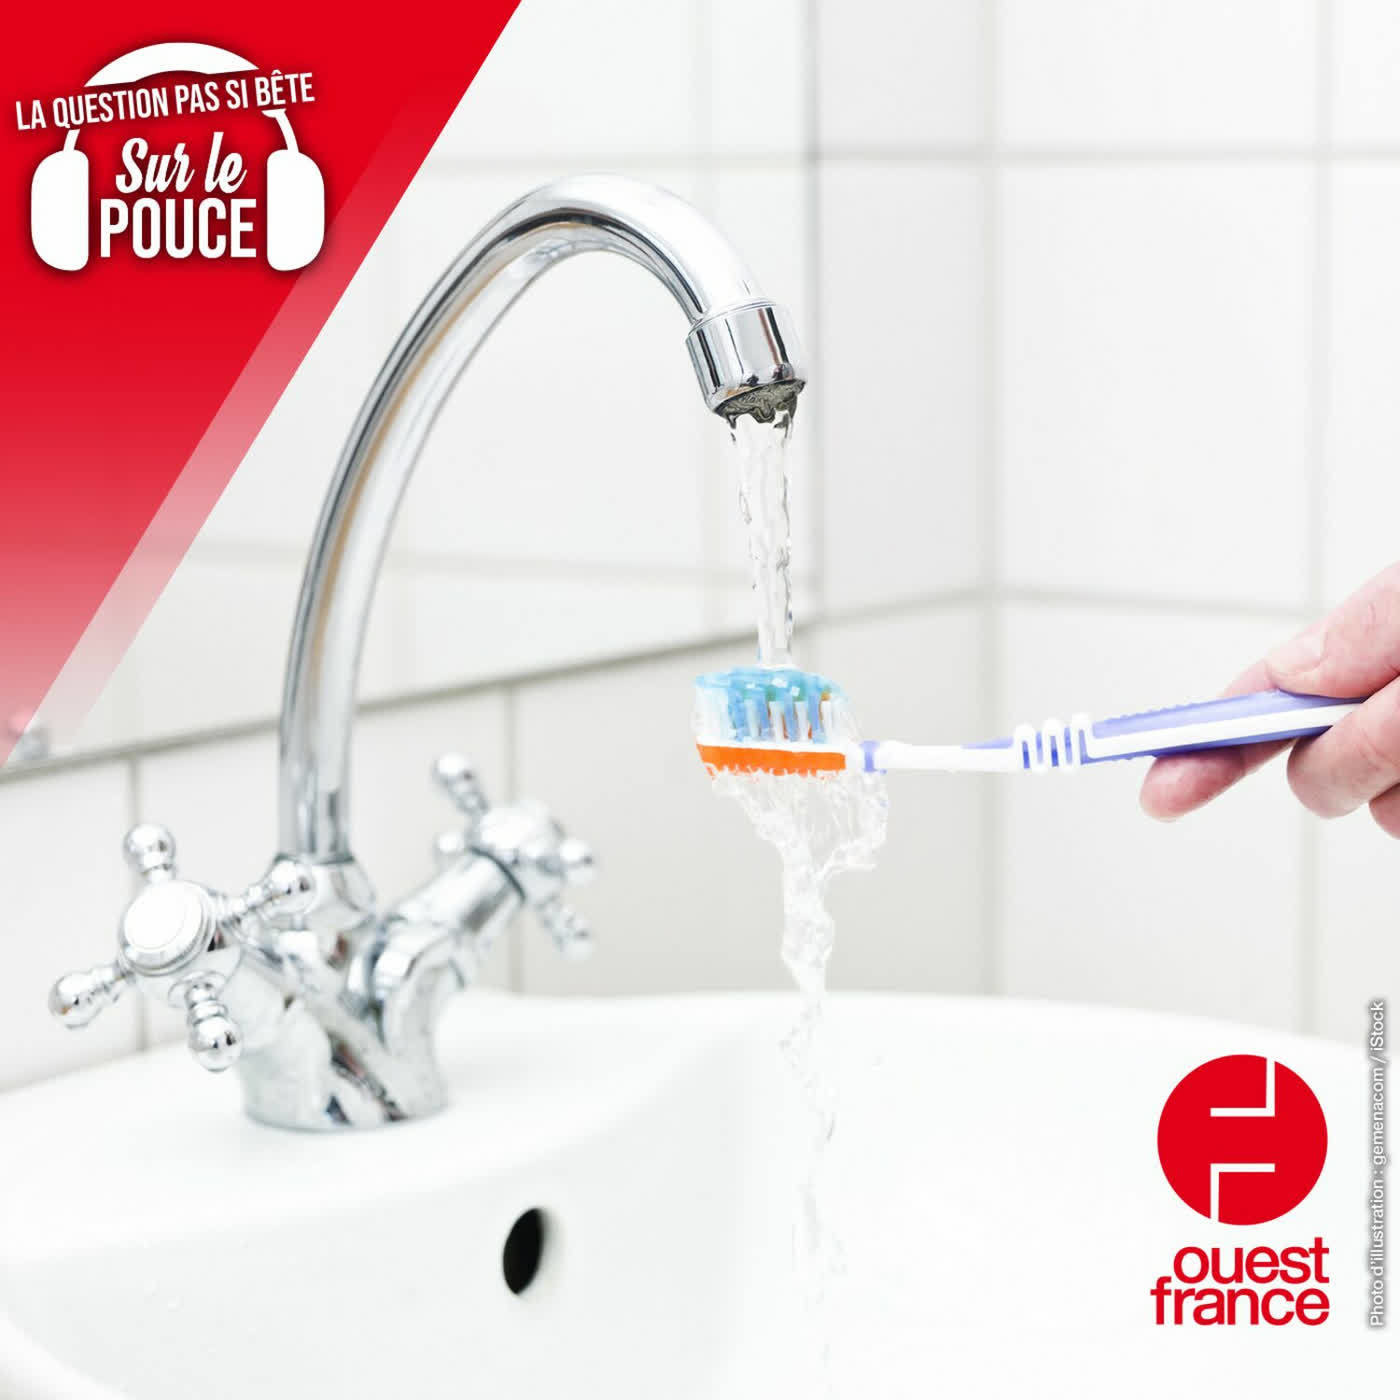 Doit-on mouiller sa brosse à dents avant ou après avoir mis le dentifrice ? - Sur le pouce, les questions pas si bêtes